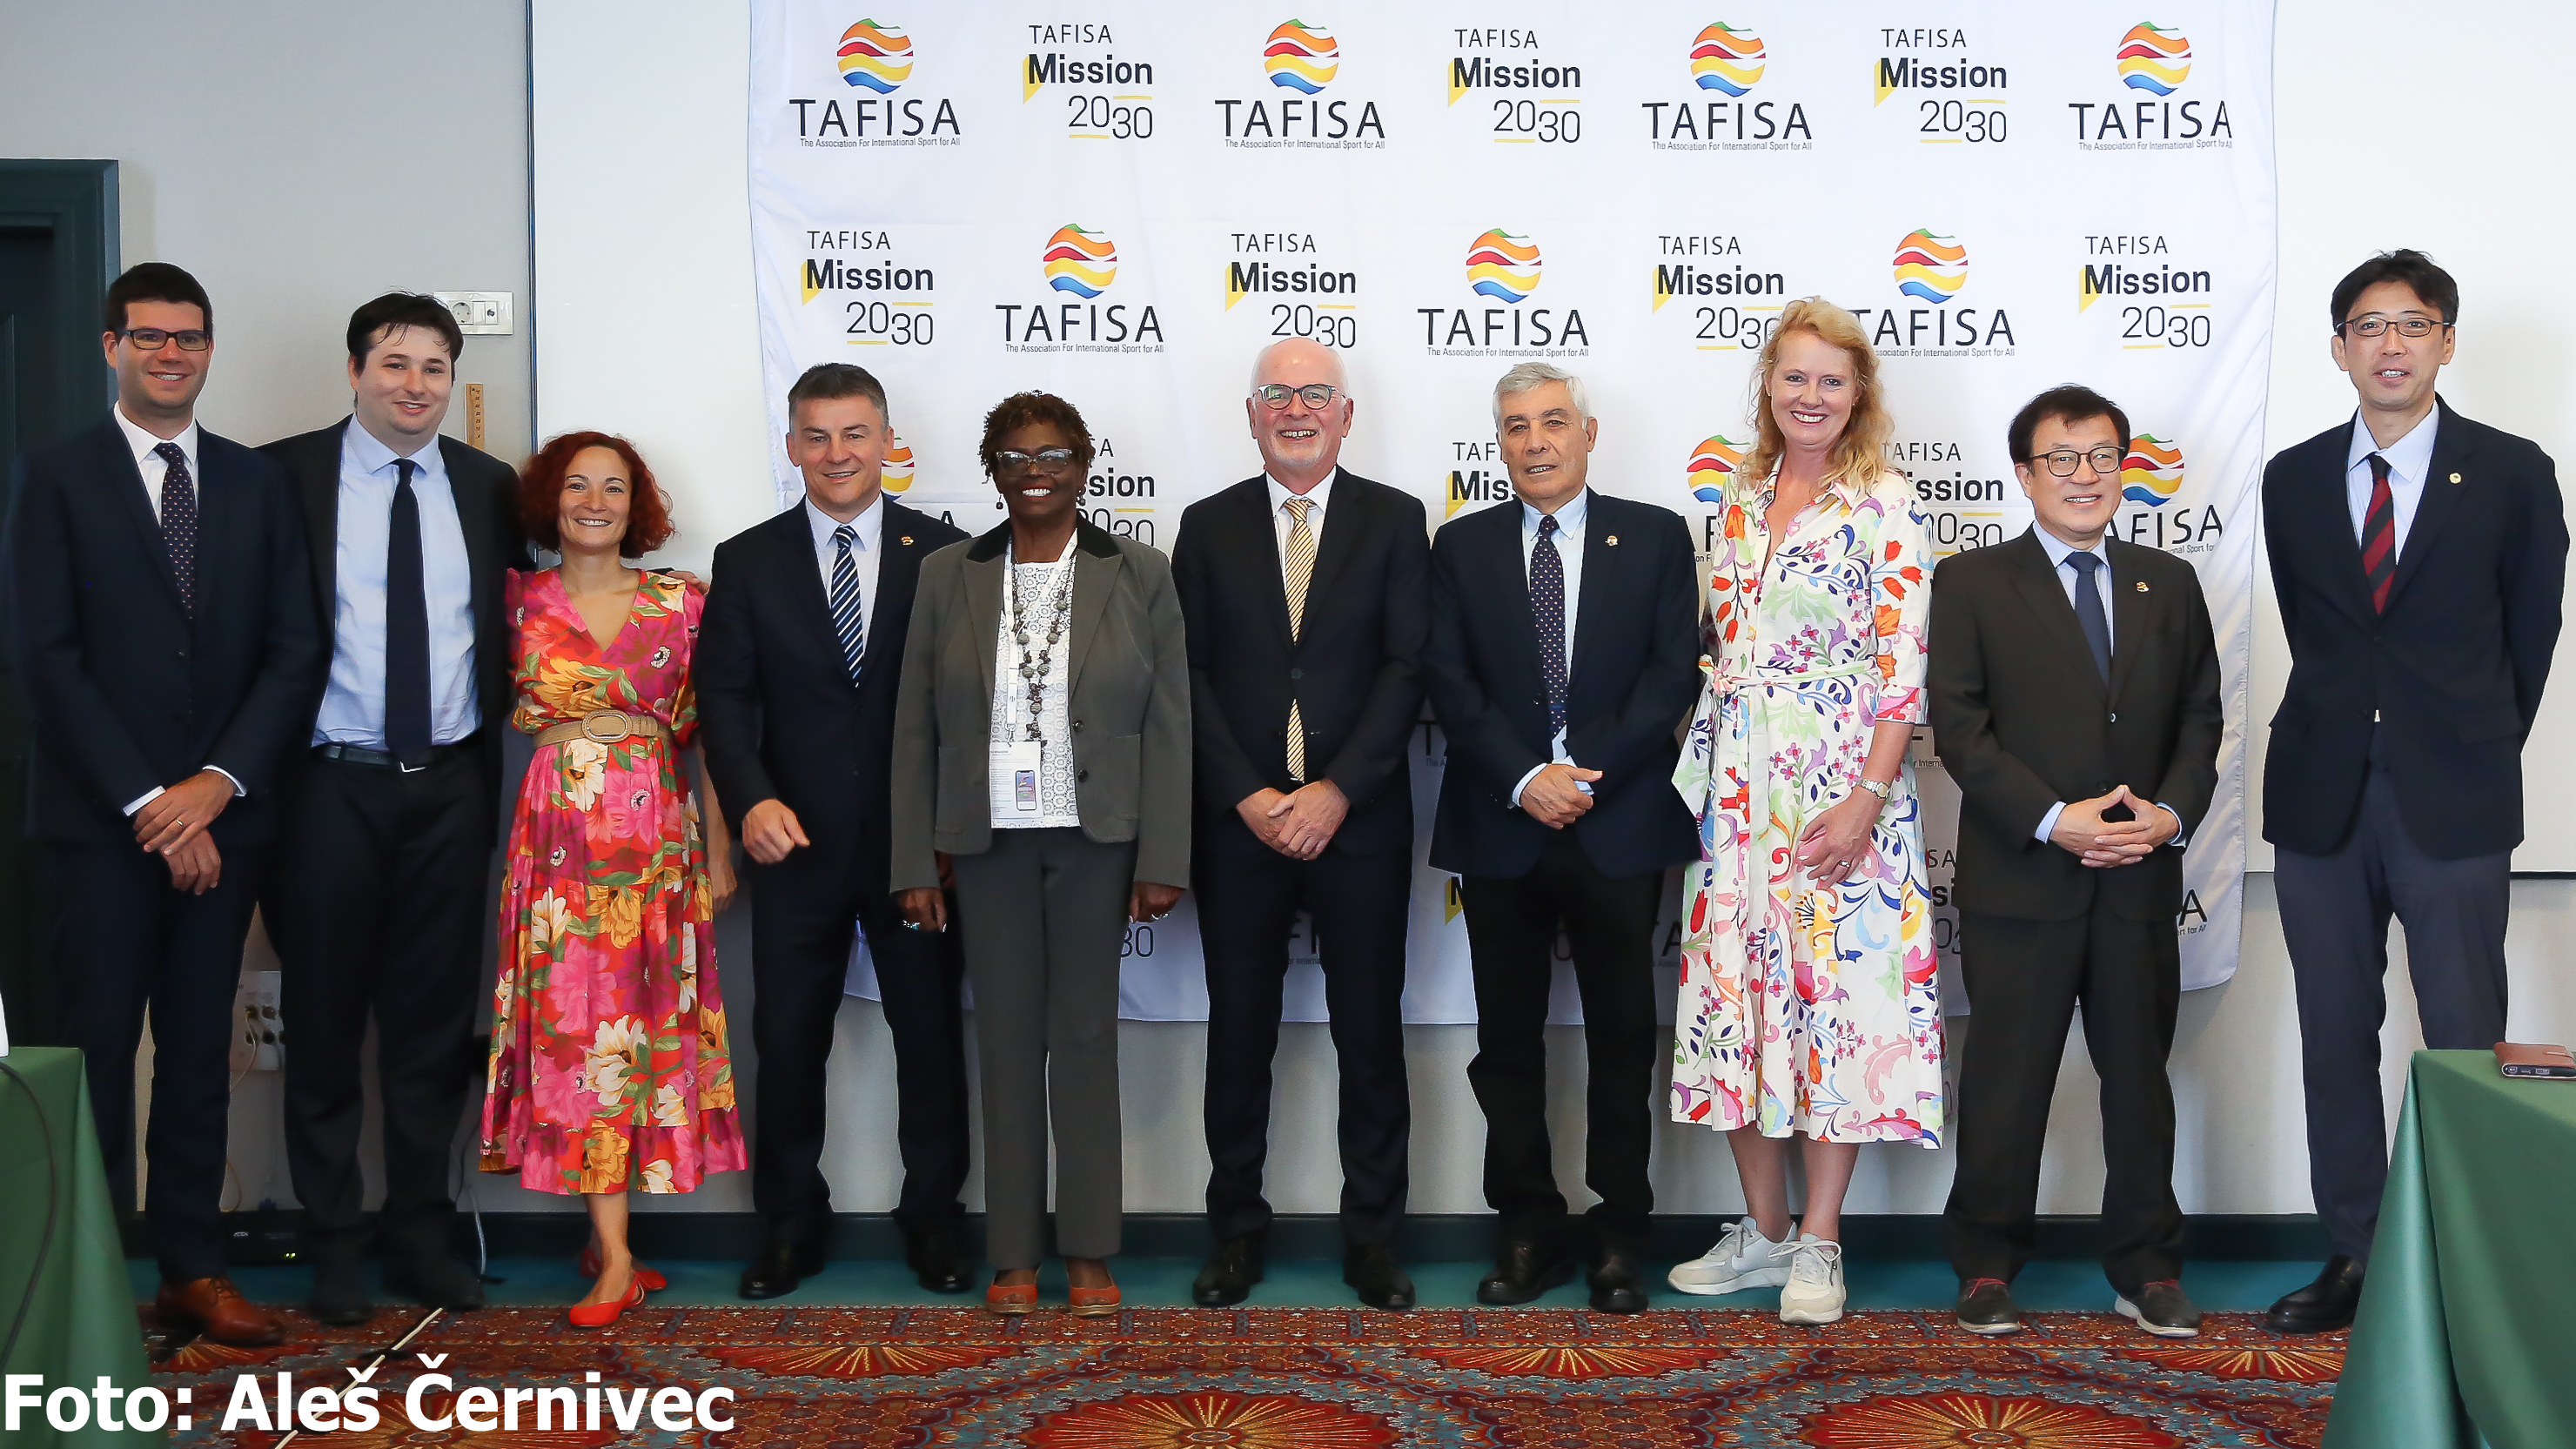 The TAFISA Board of Directors